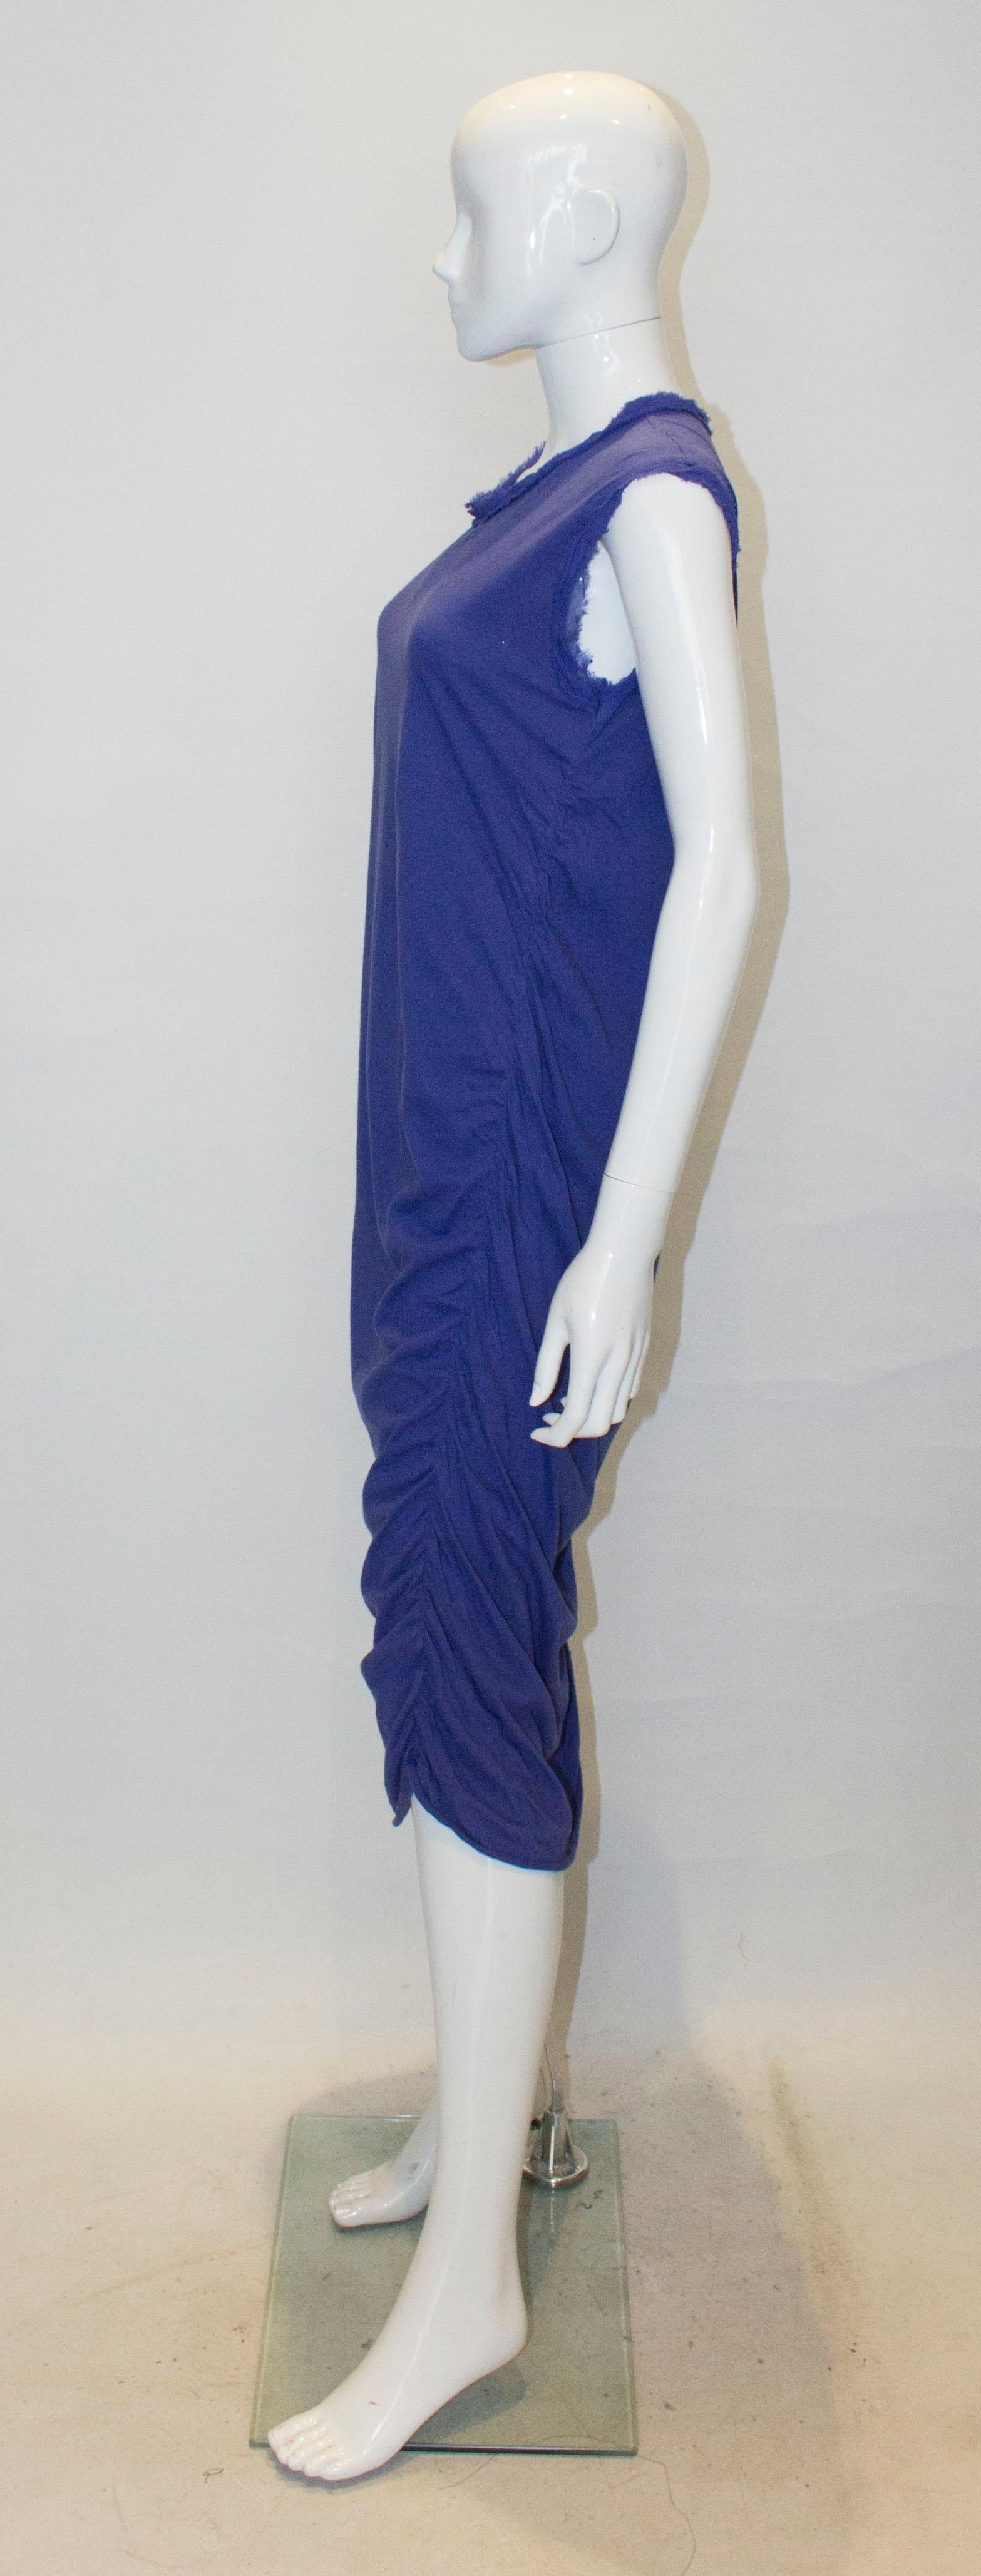 lanvin purple dress